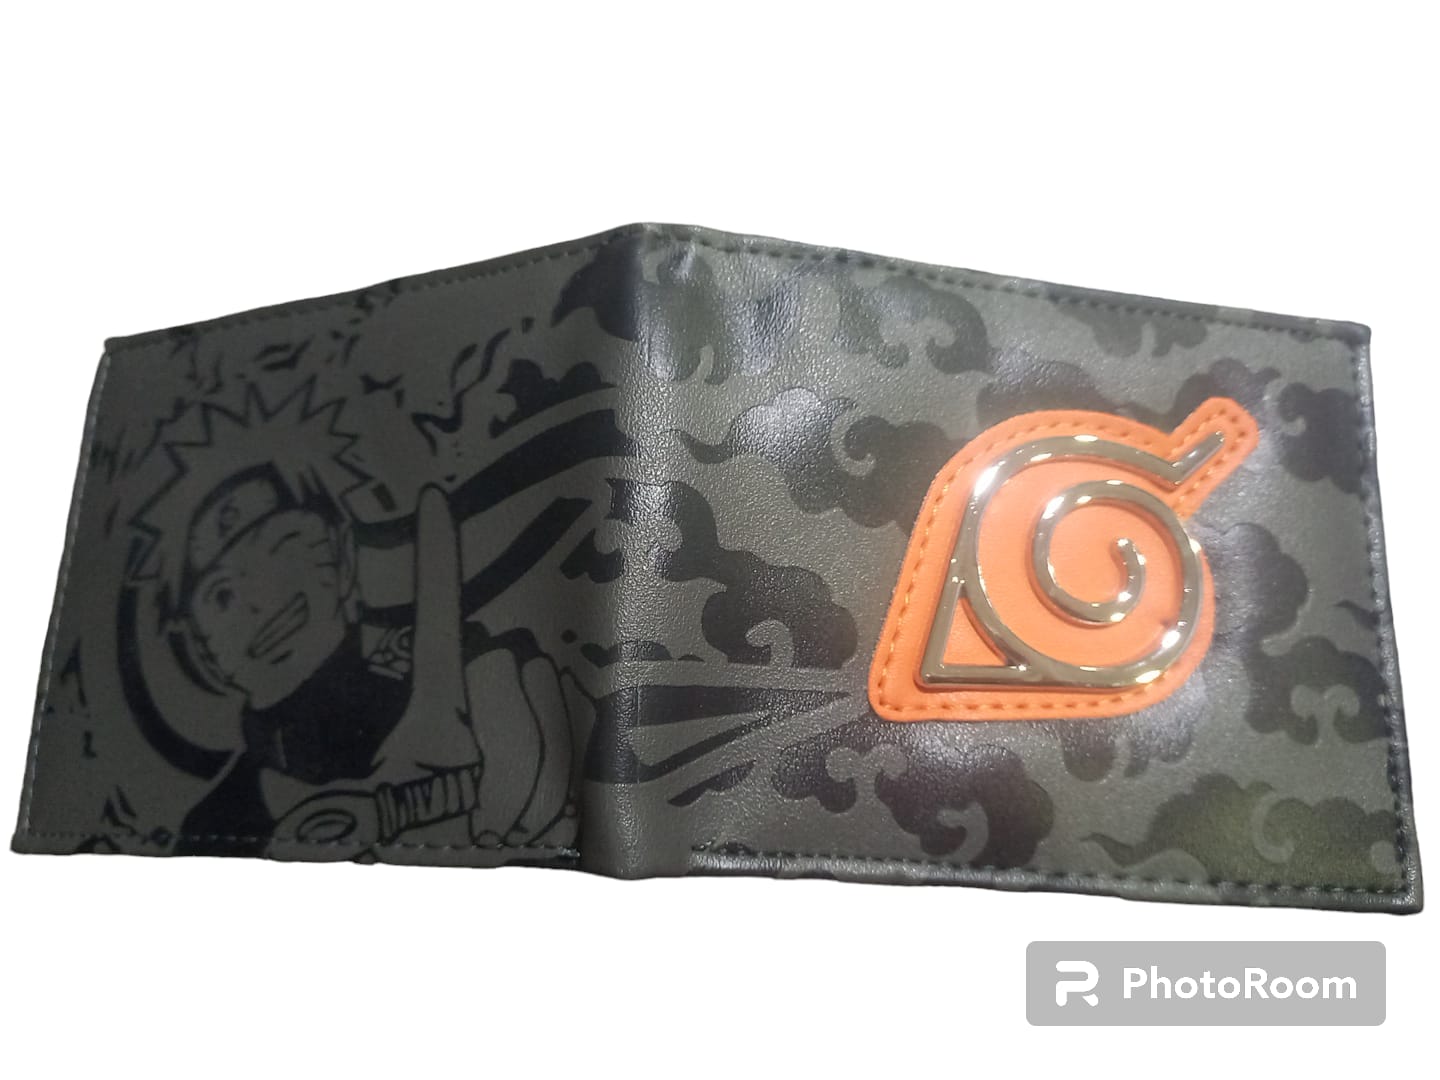 Billetera Naruto PT Naruto Shippuden Anime En cuerina, gris y negro con logo aldea de la hoja